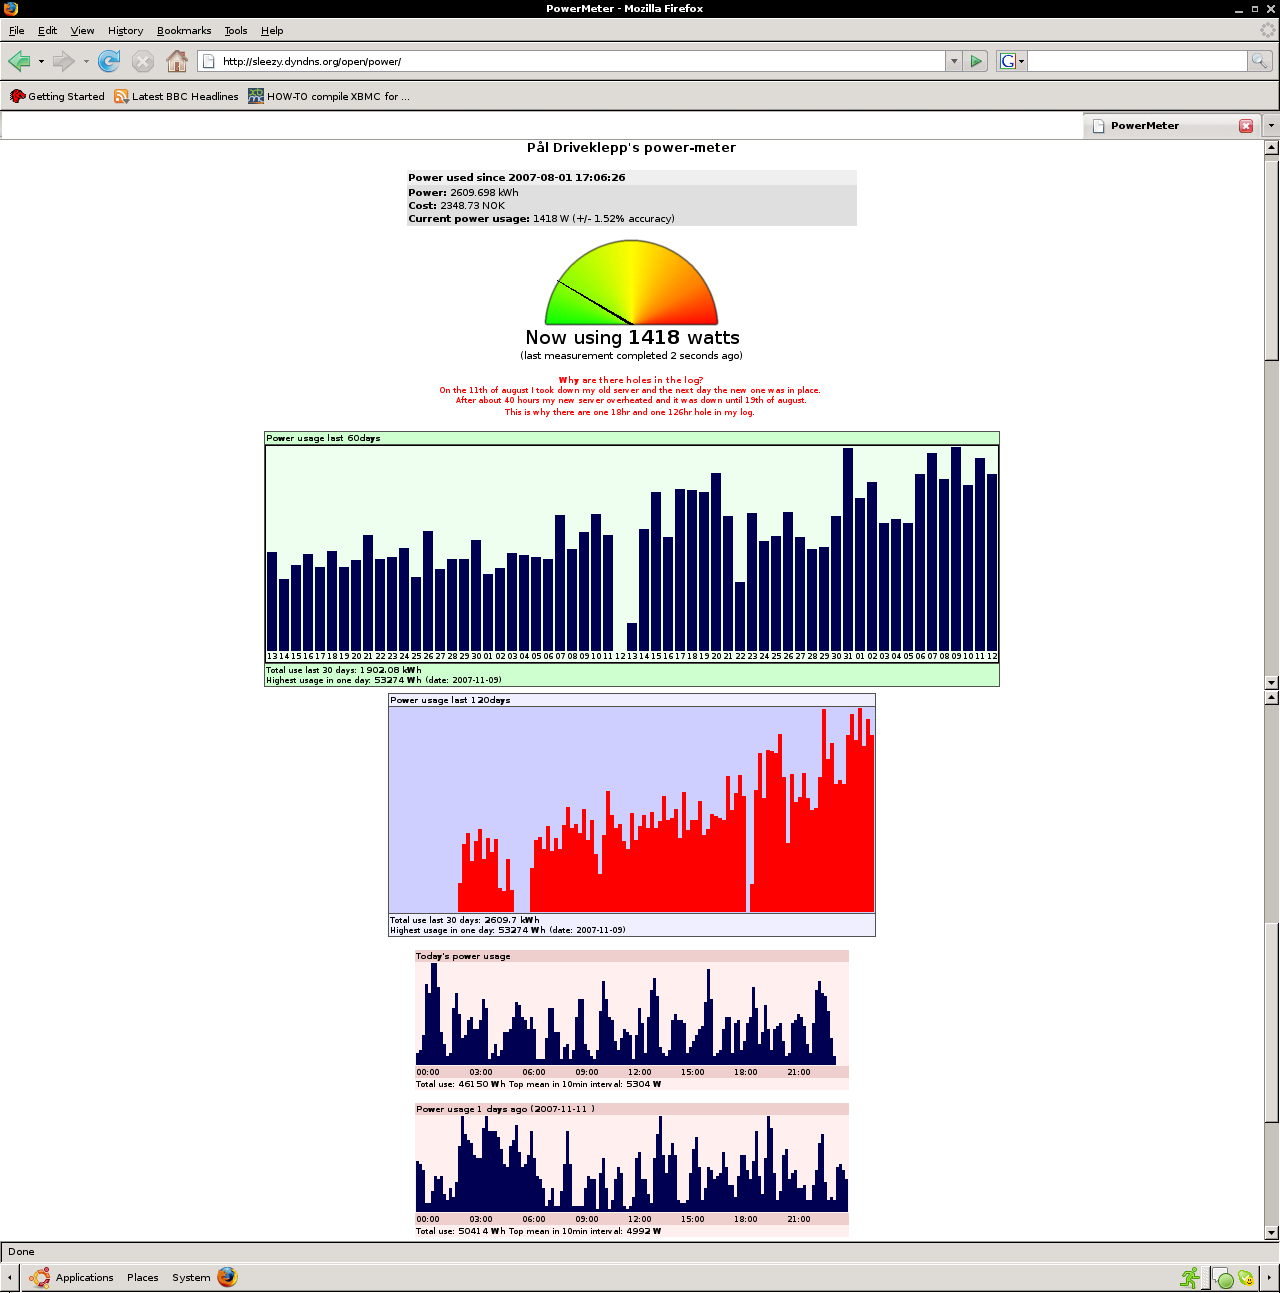 PHP based web-interface displaying statistics